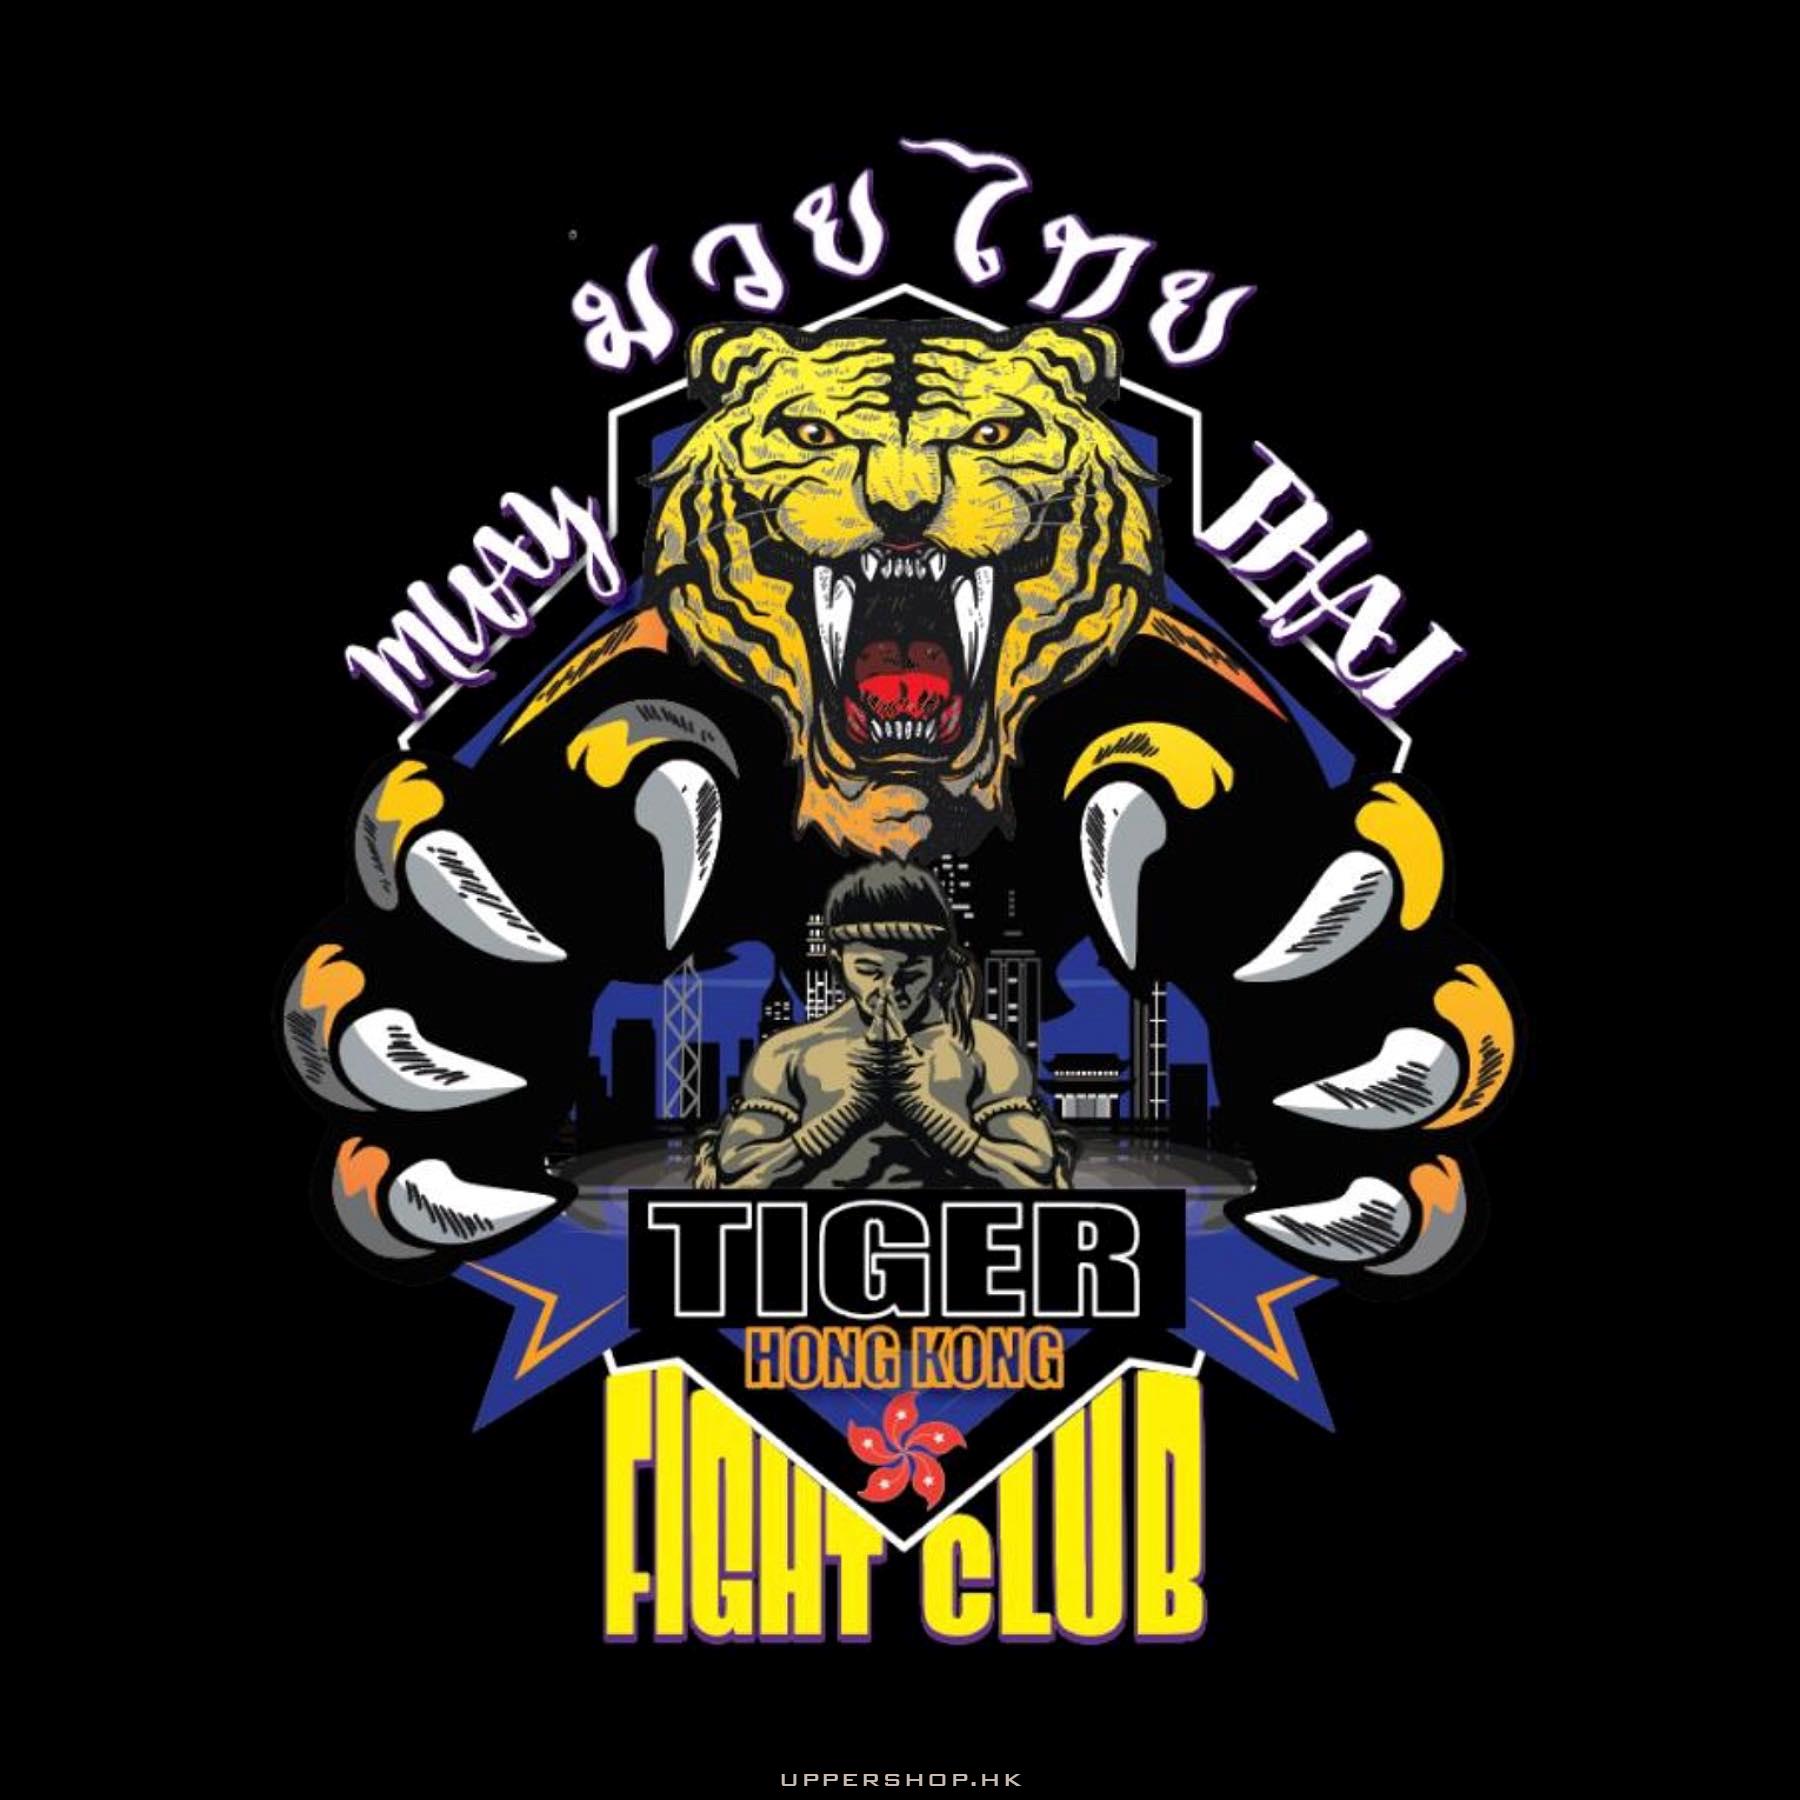 Tiger Fight Club HK